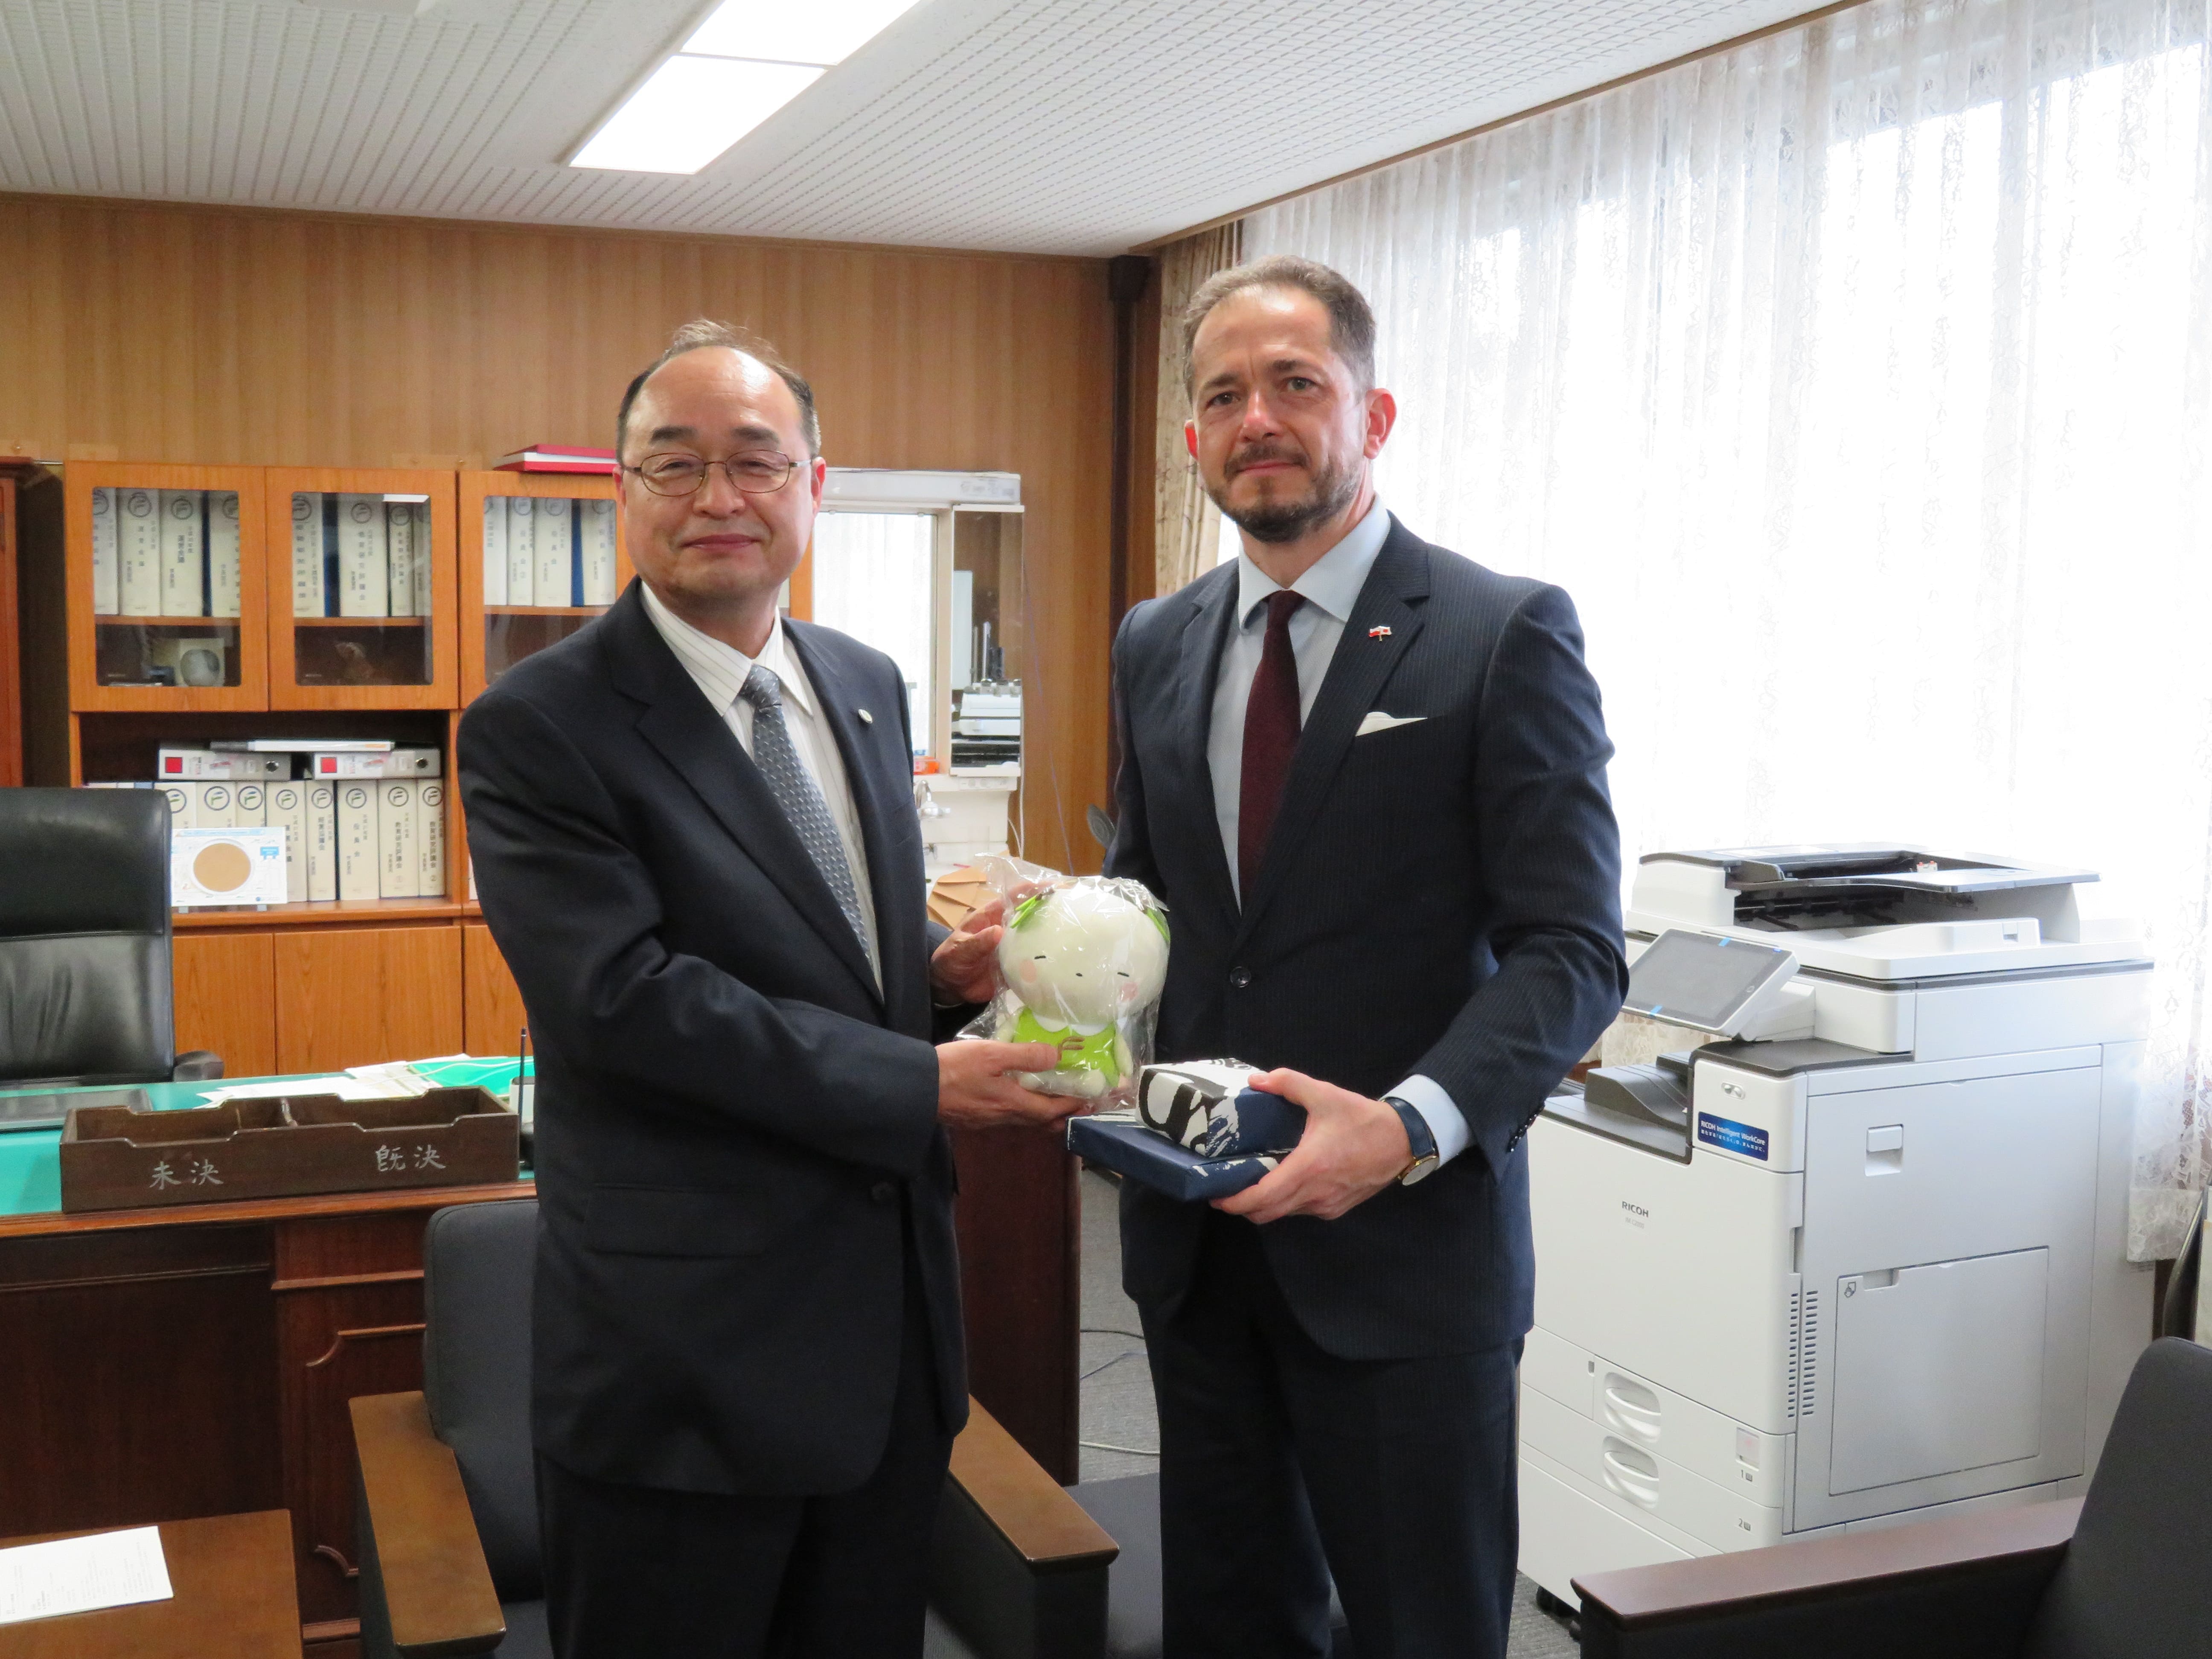 Ambassador Milewski paid a courtesy visit to President Miura